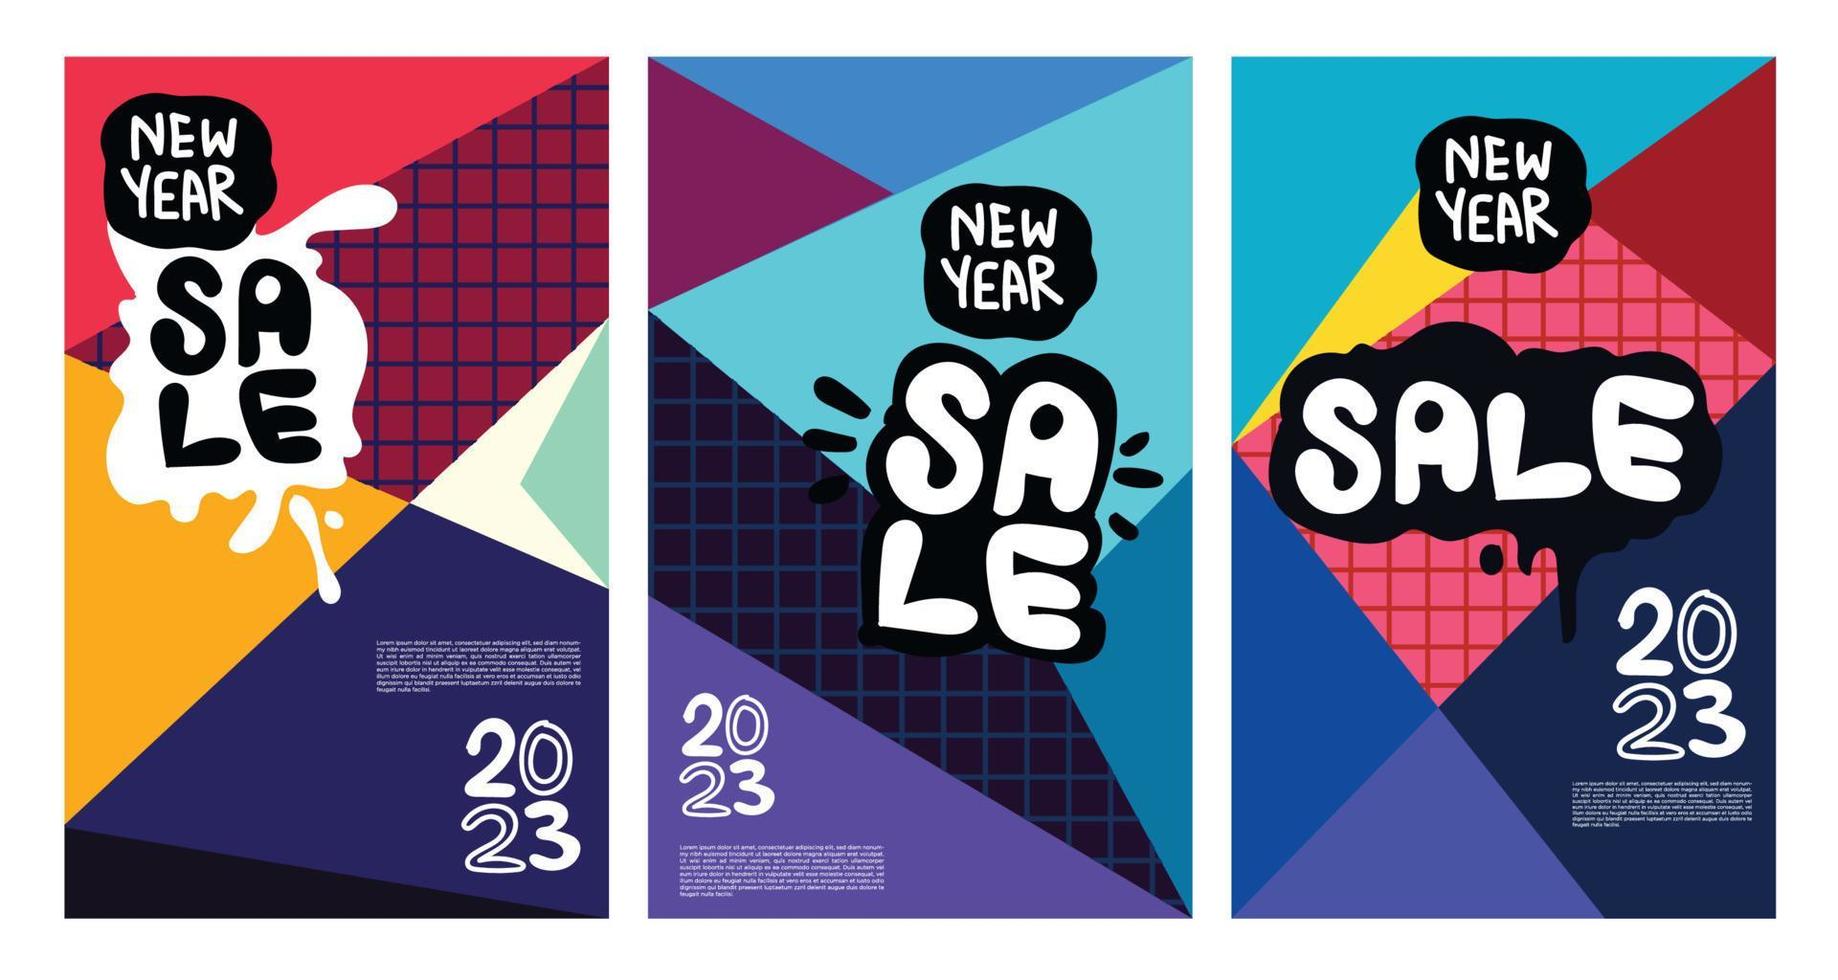 vector venta de año nuevo 2023 con fondo abstracto colorido para publicidad de banner